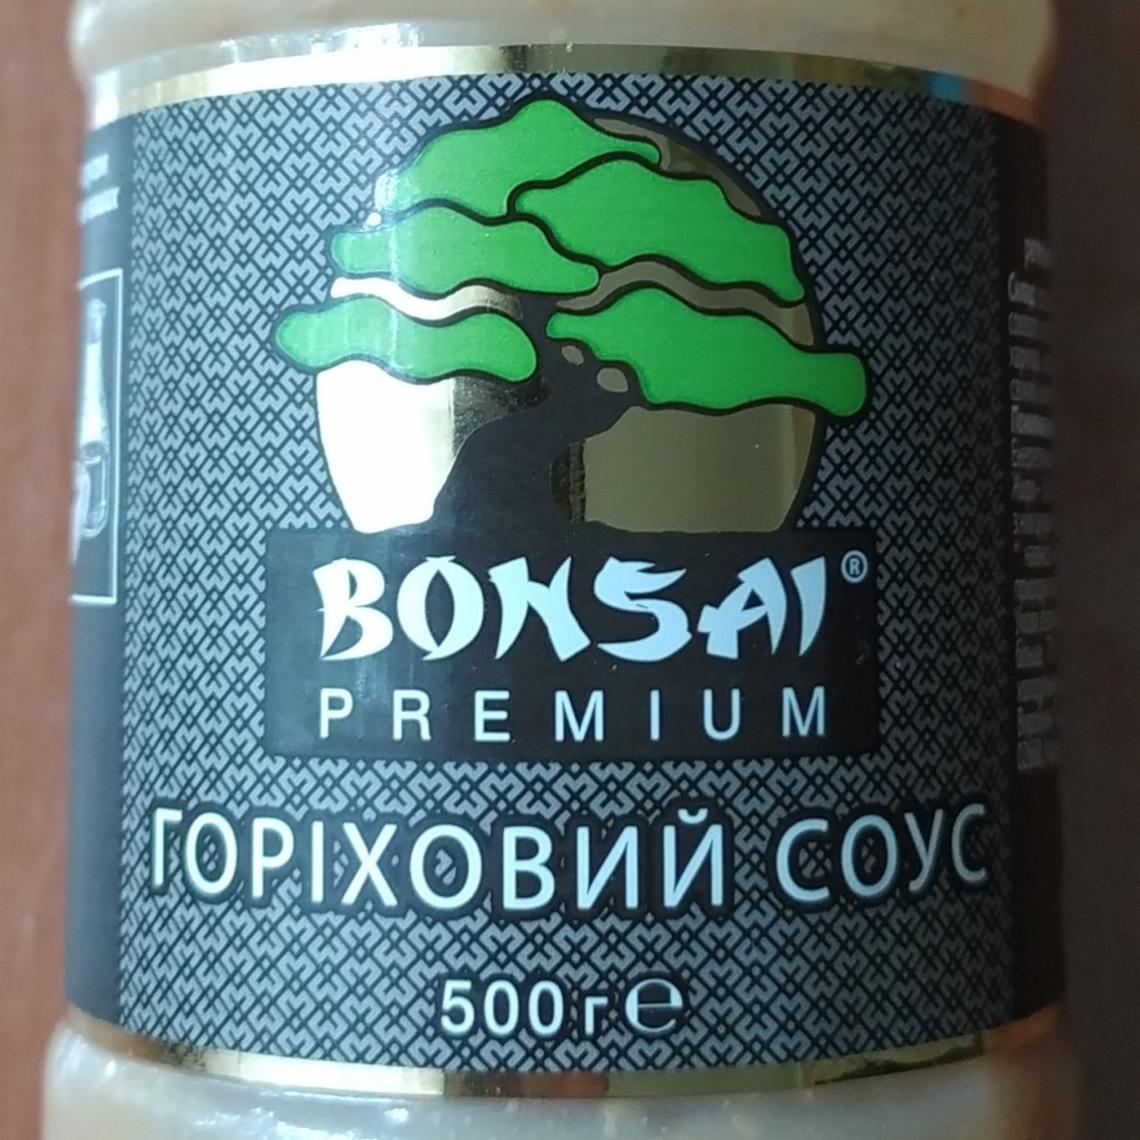 Фото - Ореховый соус Premium Bonsai